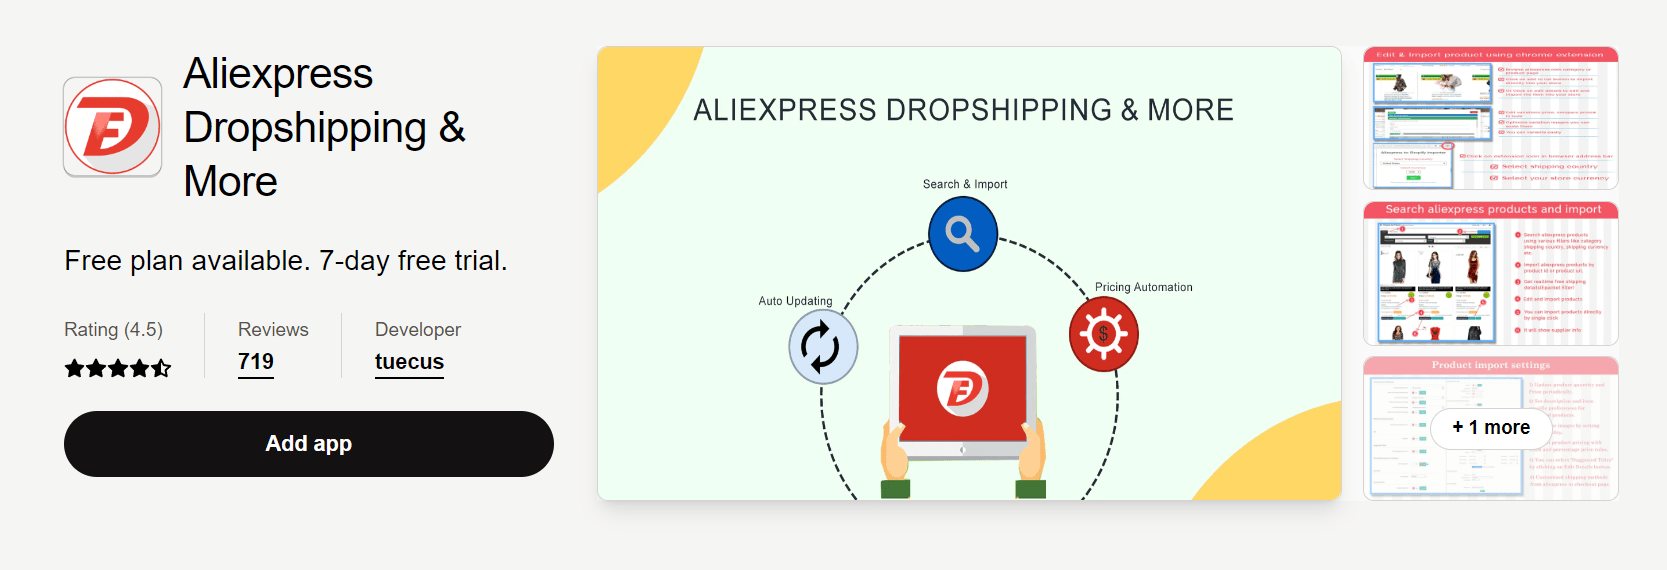 Aplicativo de dropshipping Aliexpress